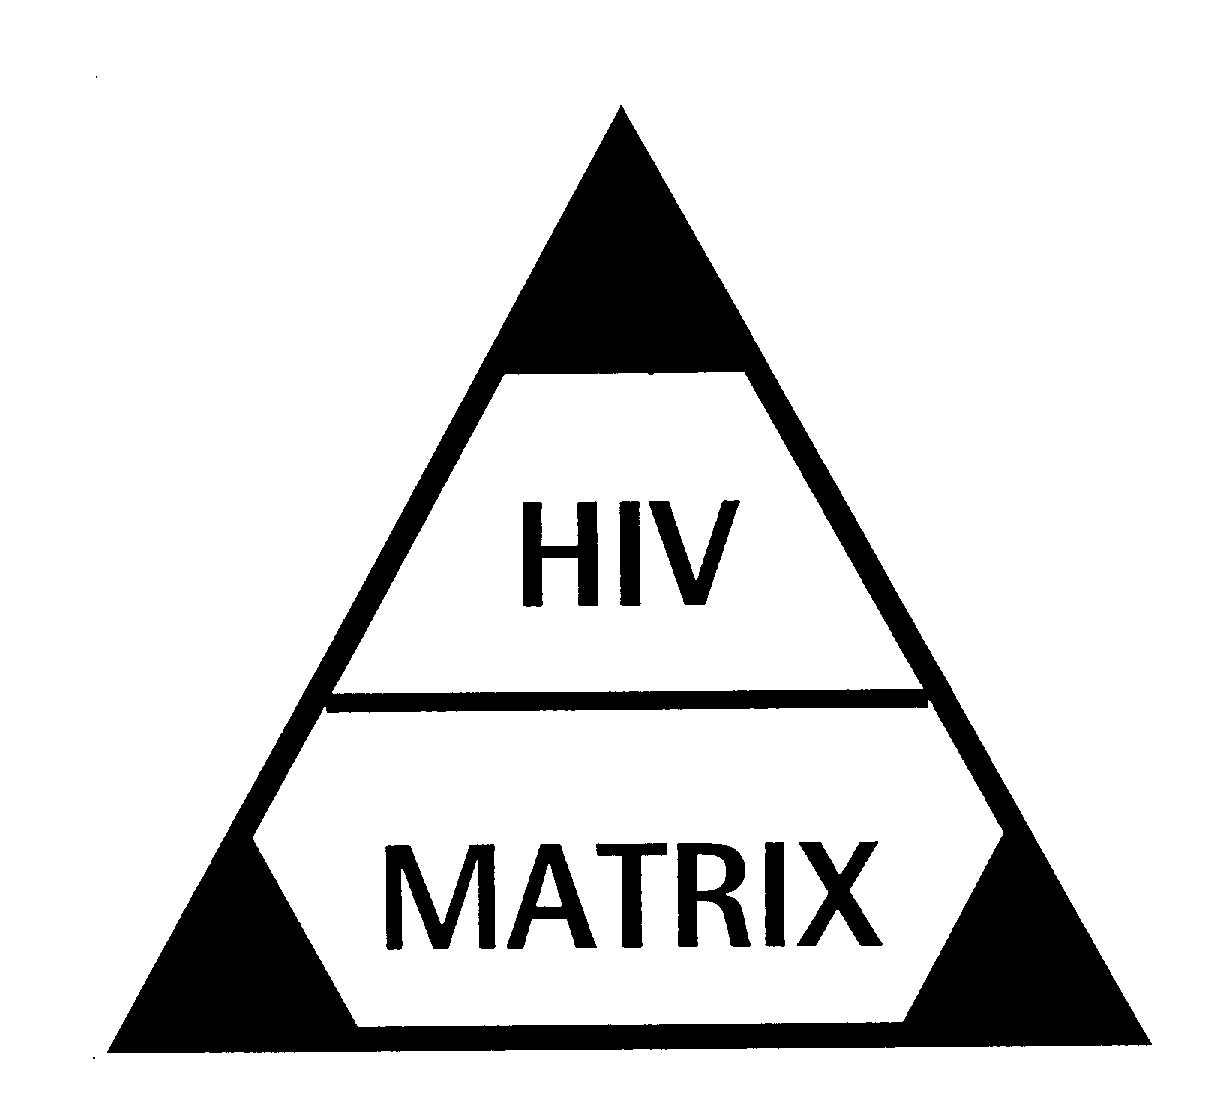  HIV MATRIX